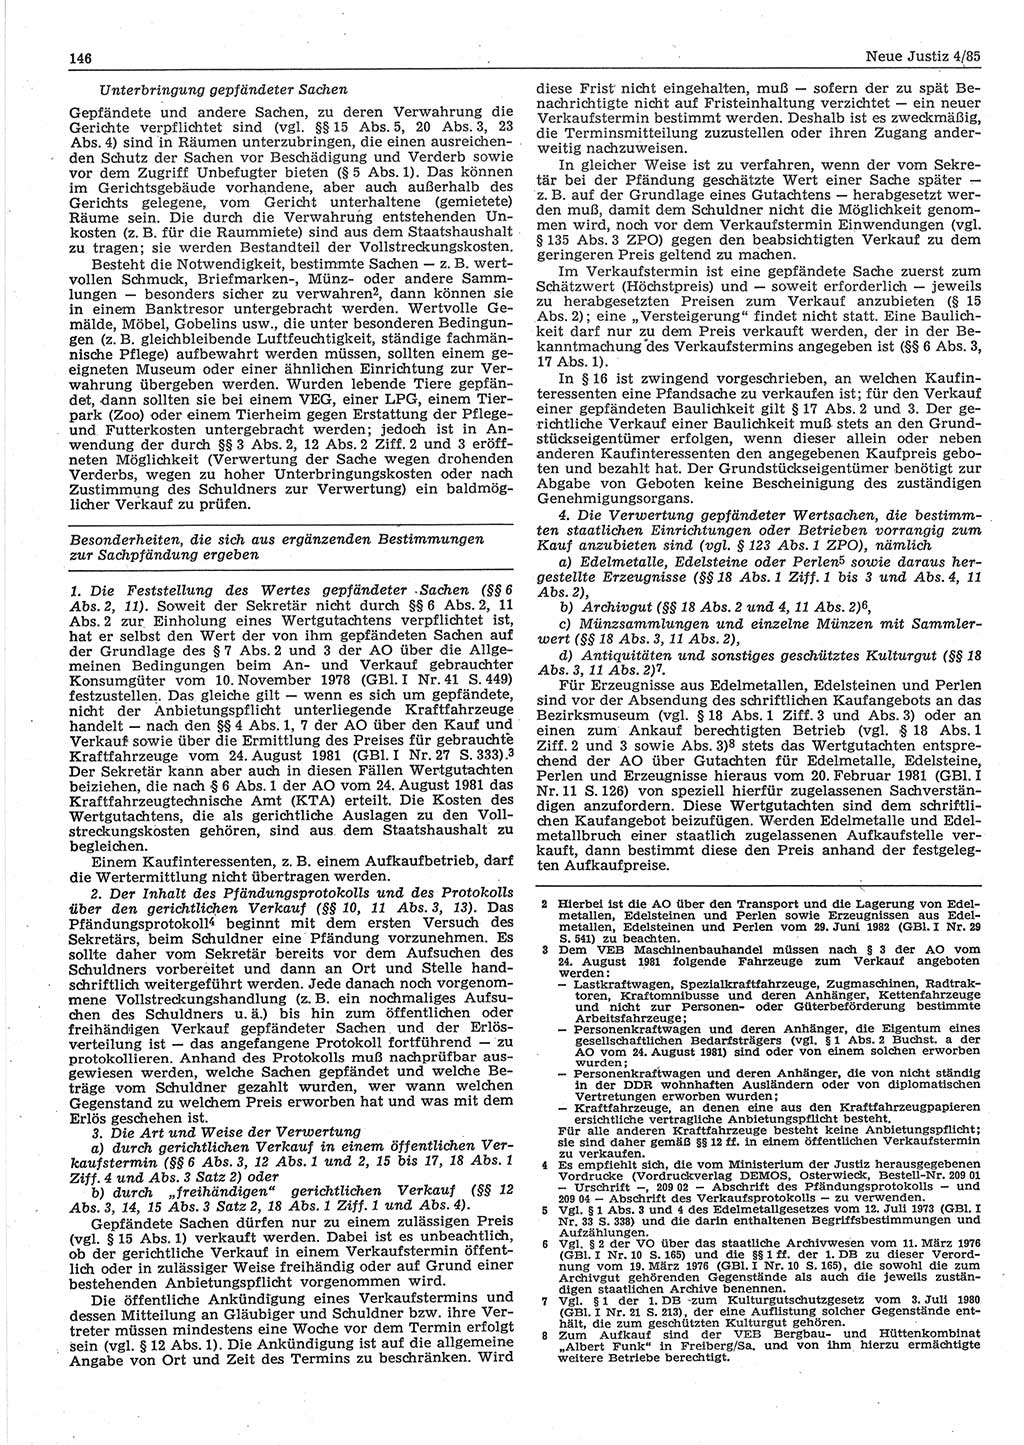 Neue Justiz (NJ), Zeitschrift für sozialistisches Recht und Gesetzlichkeit [Deutsche Demokratische Republik (DDR)], 39. Jahrgang 1985, Seite 146 (NJ DDR 1985, S. 146)